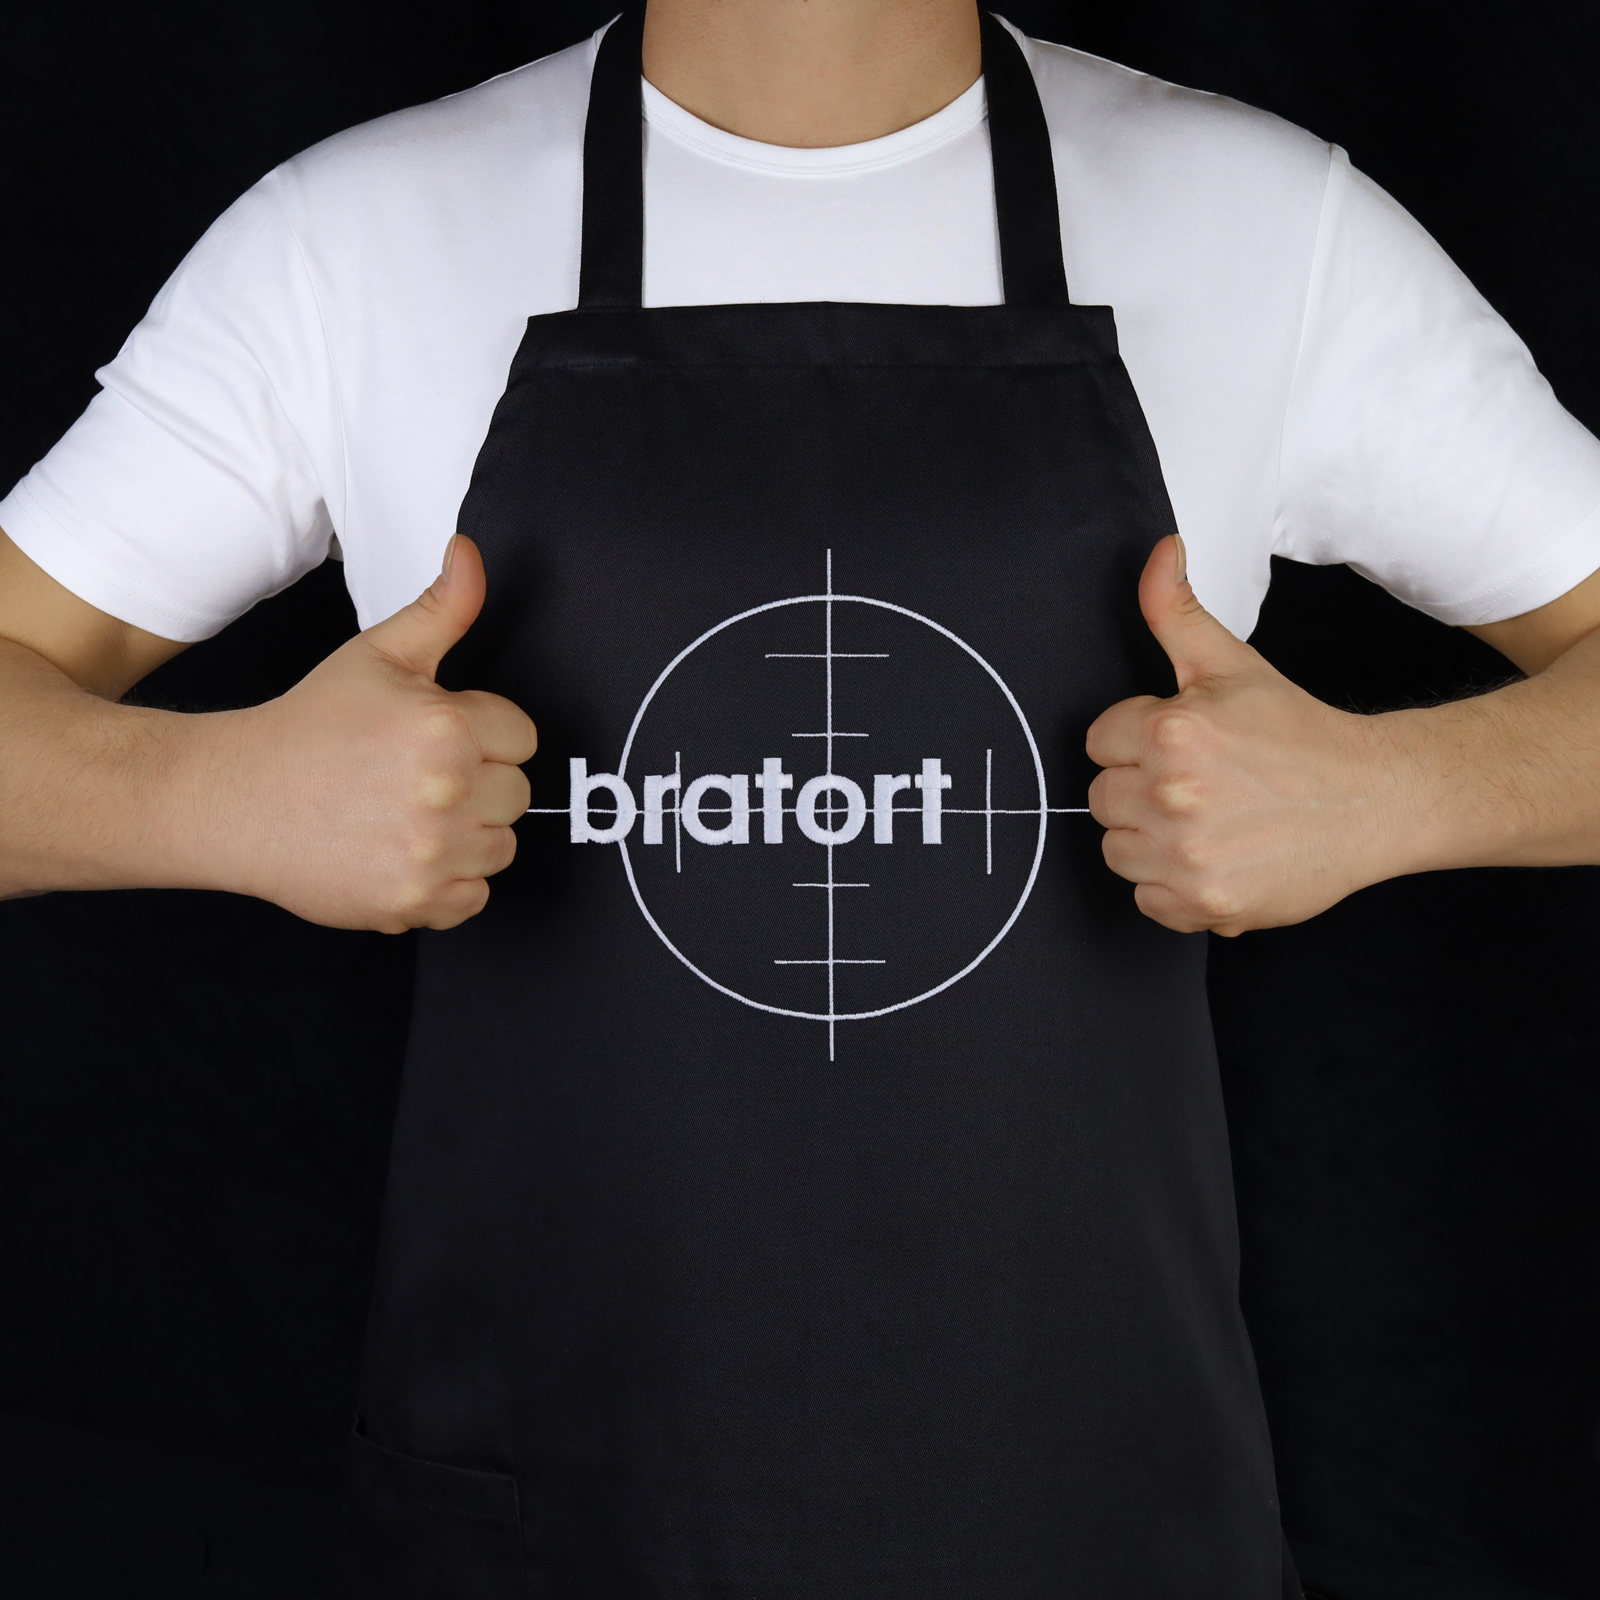 Bratort - Grillschürze